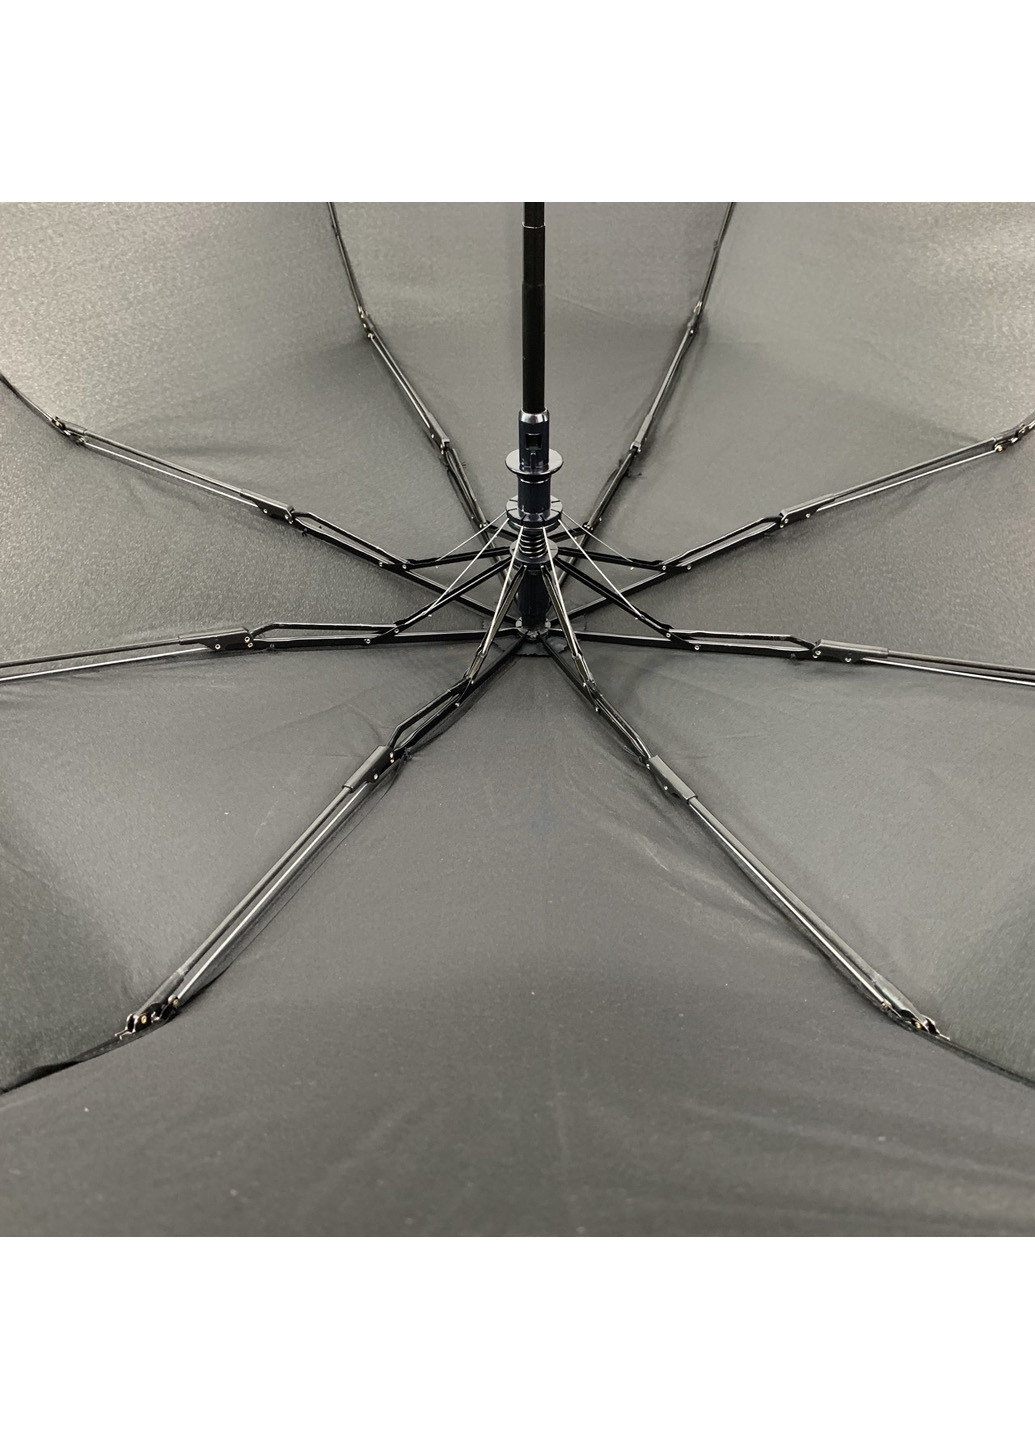 Мужской складной зонт-полуавтомат 98 см Flagman (193351062)